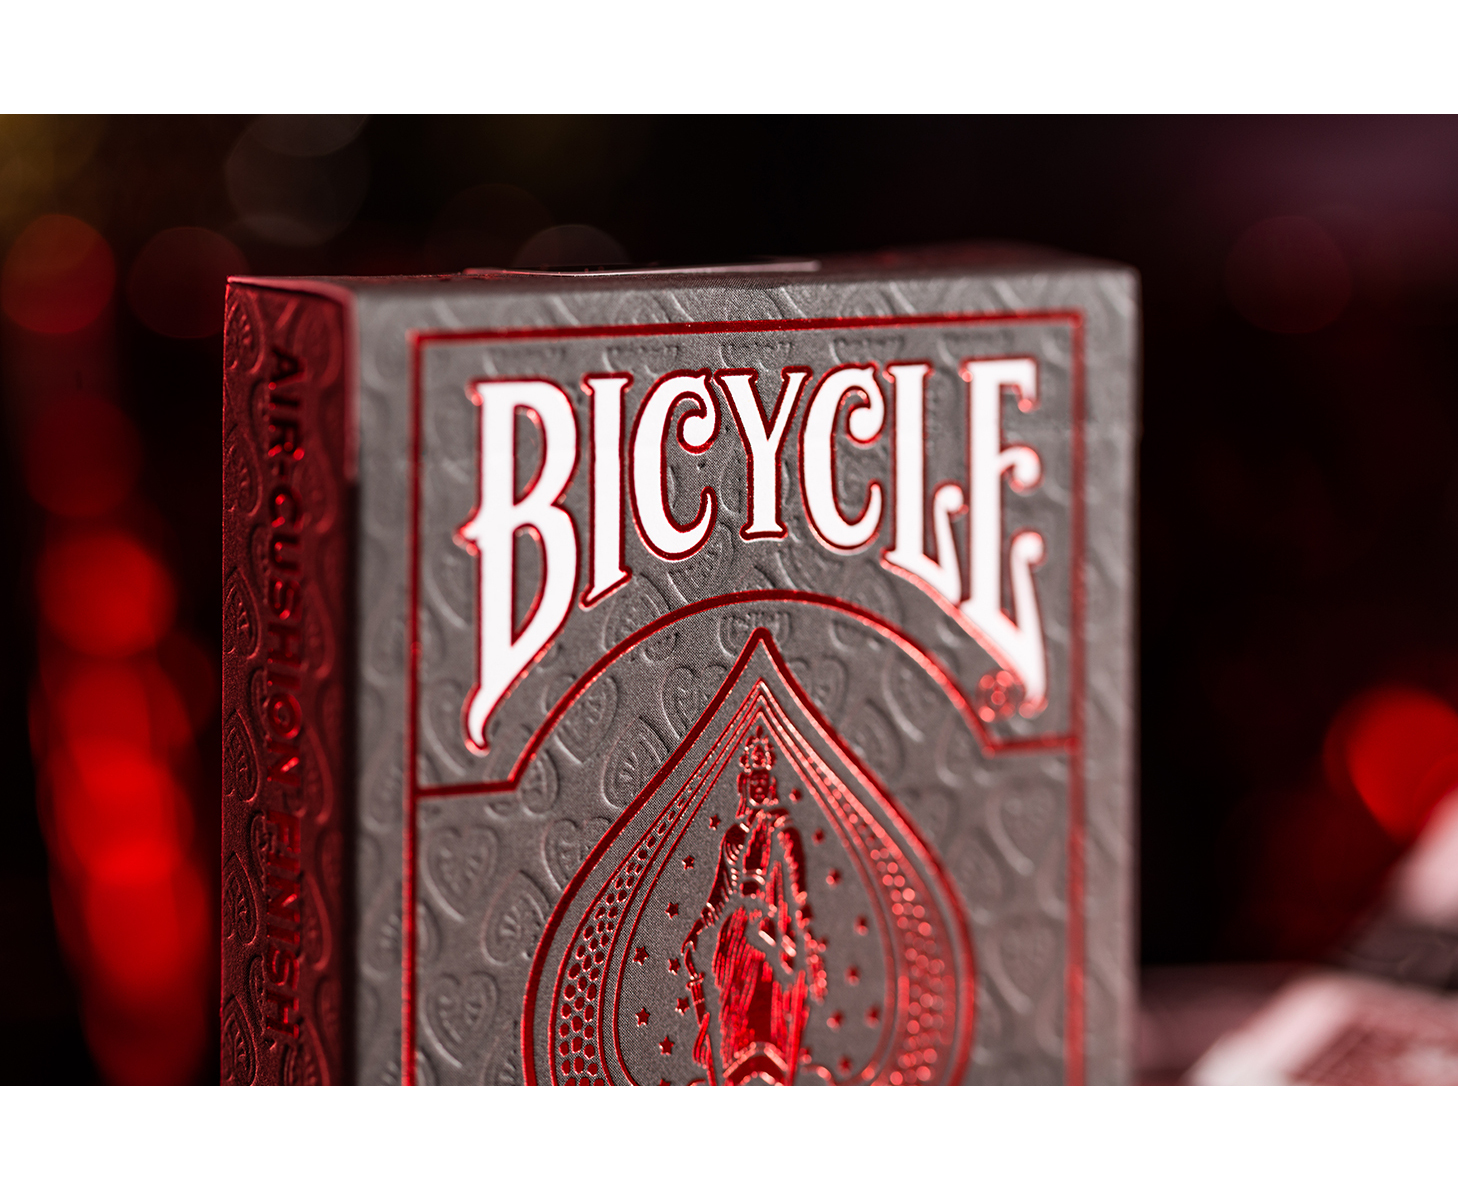 Kartenspiel Bicycle - ASS Foil Crimson Back Kartendeck ALTENBURGER Red